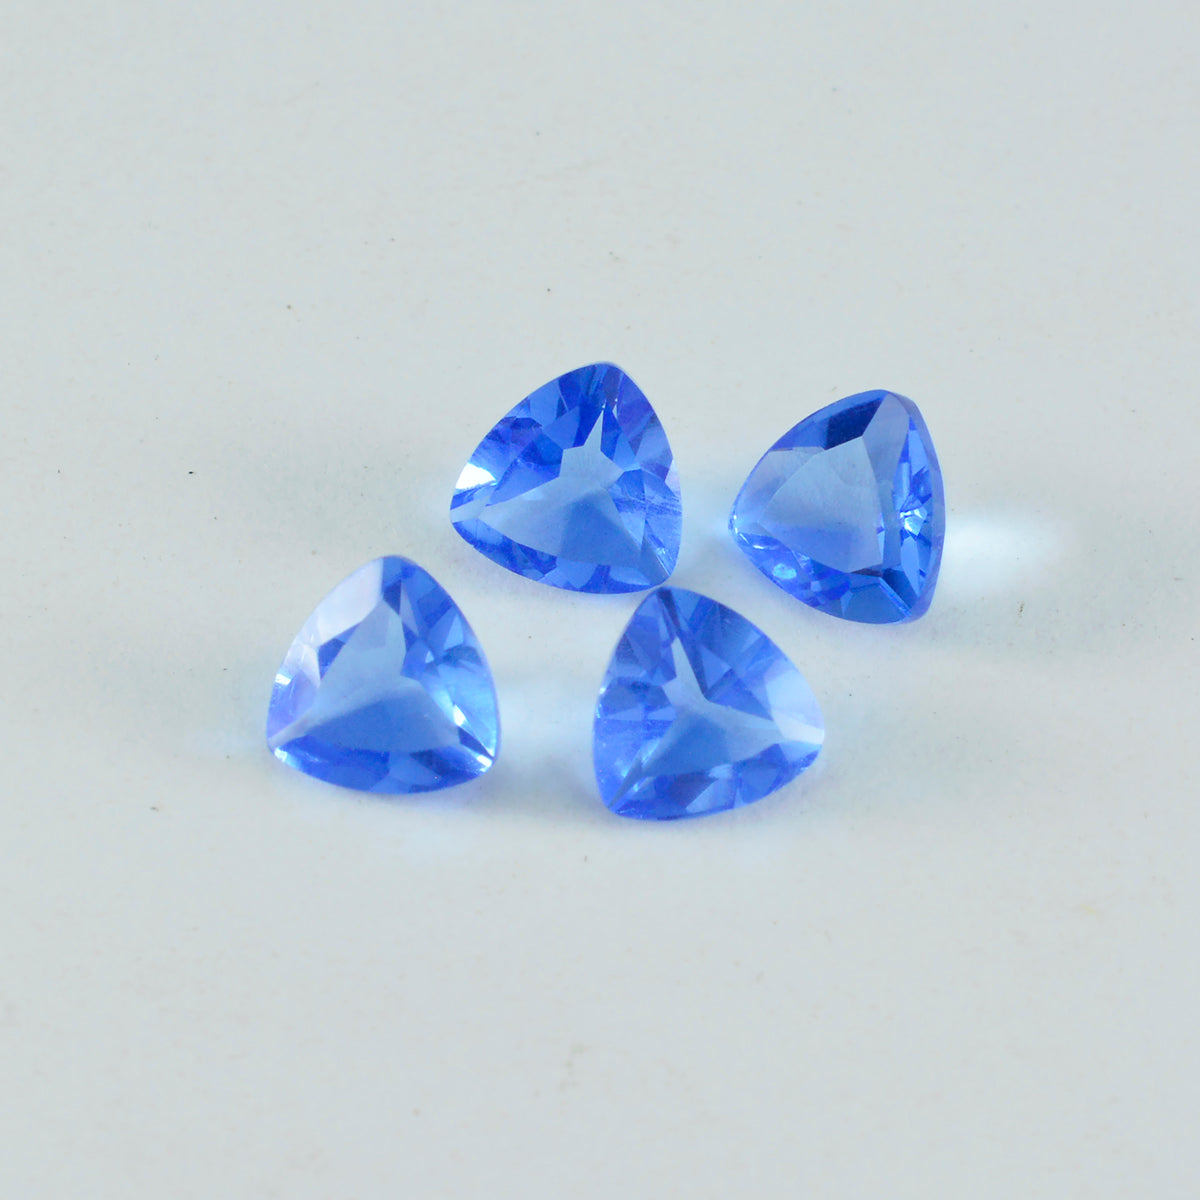 Riyogems 1 Stück blauer Saphir, CZ, facettiert, 15 x 15 mm, Billionenform, ein hochwertiger loser Stein